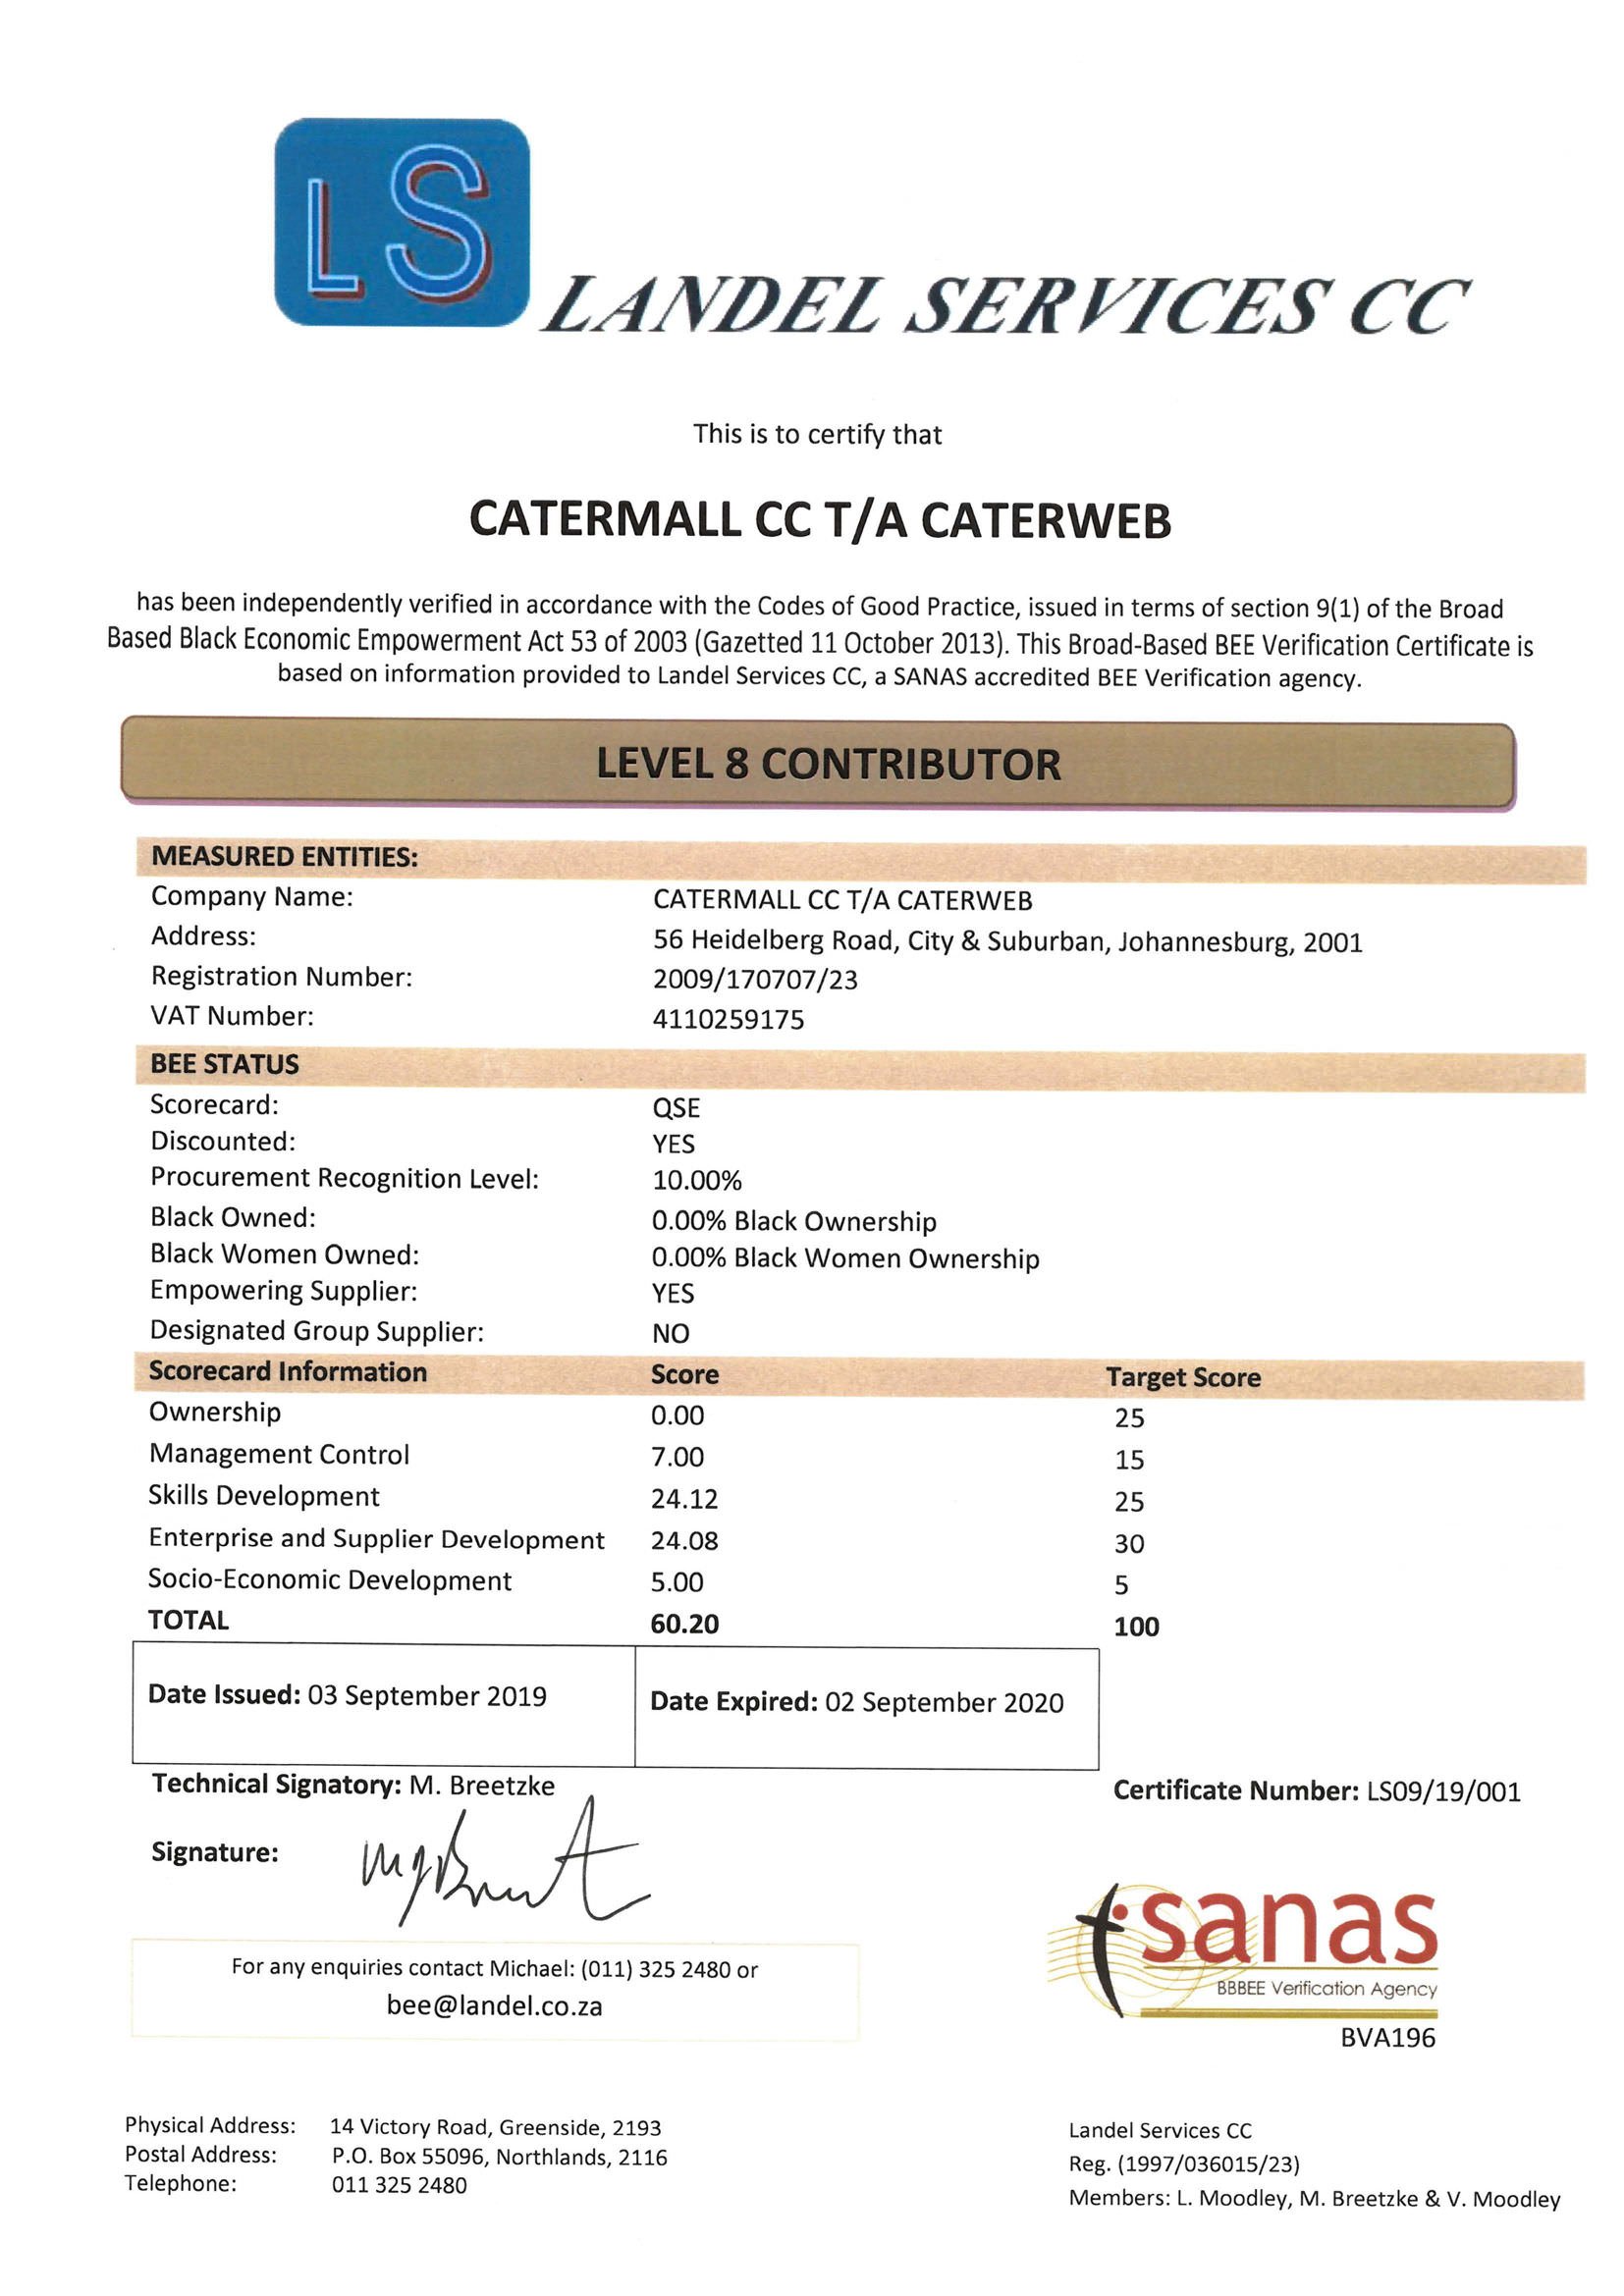 Catermall CC ta Caterweb - BEE Certificate 2019.jpg